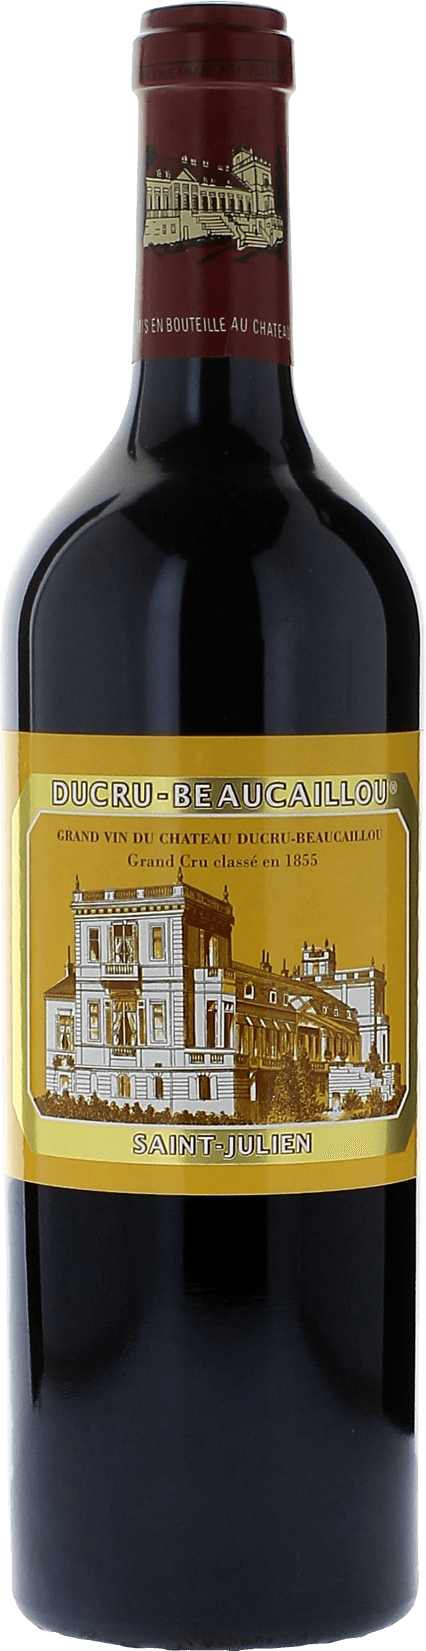 Ducru beaucaillou 1987 2me Grand cru class Saint-Julien, Bordeaux rouge